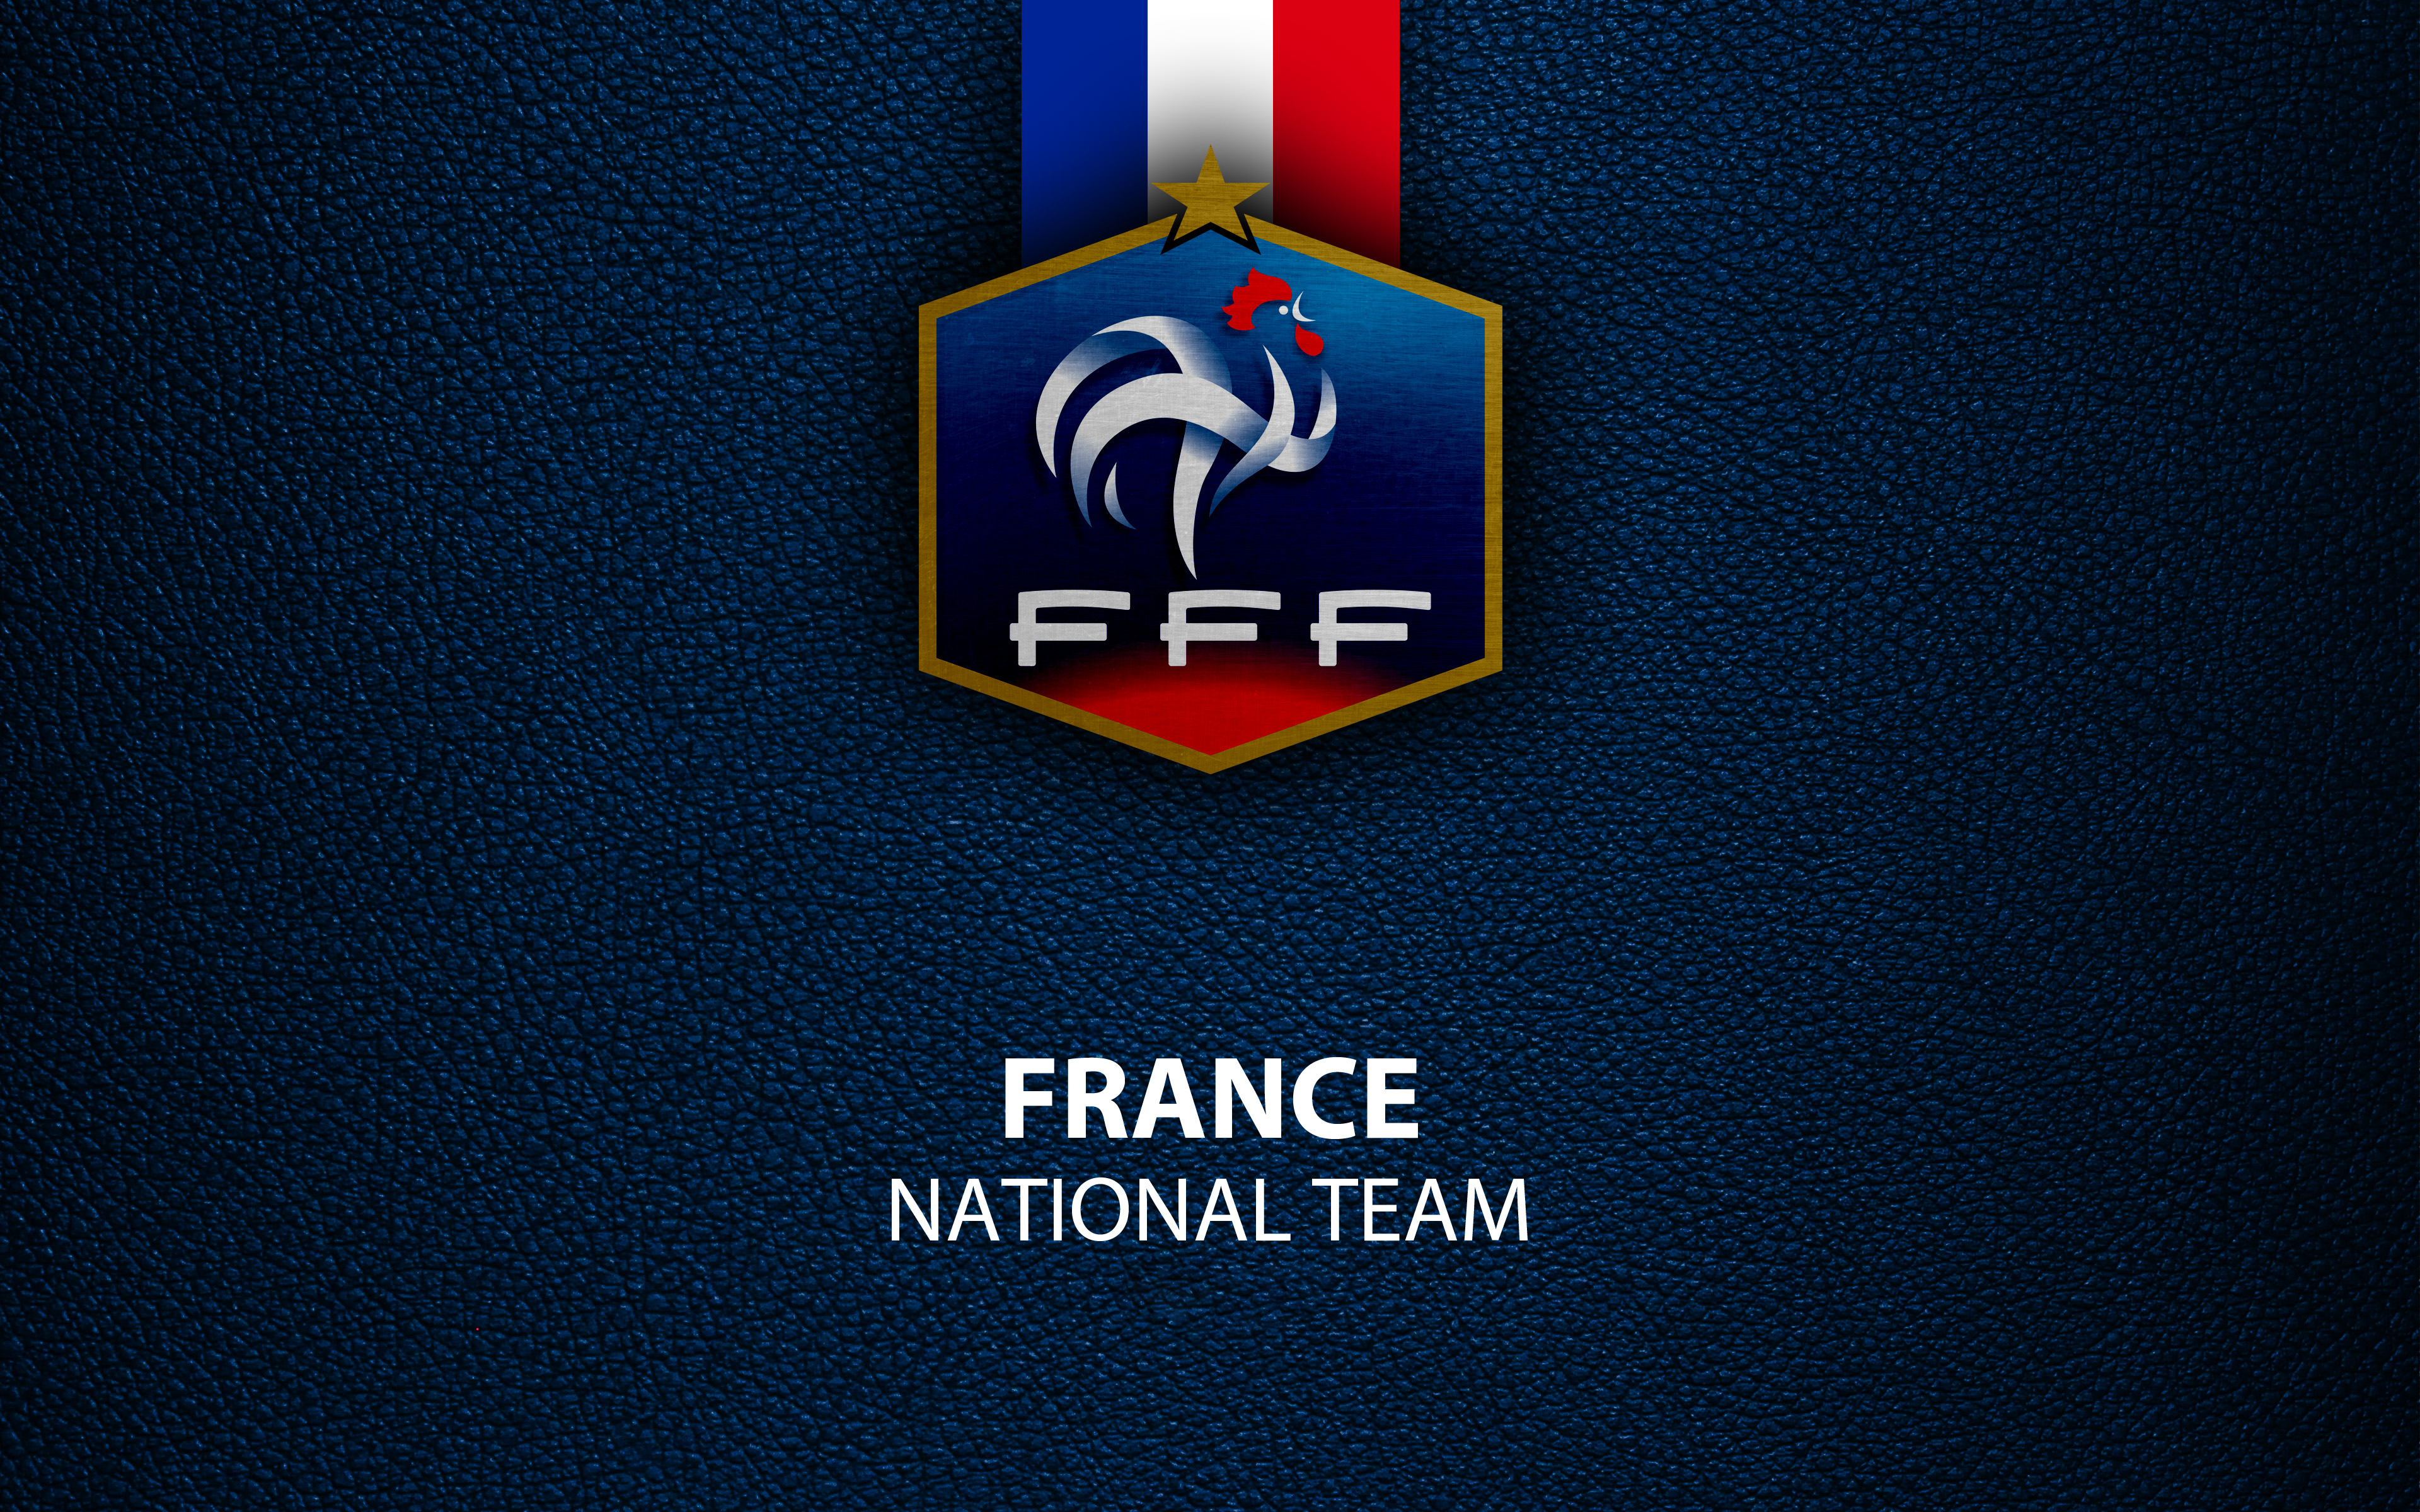 Скачать обои Сборная Франции По Футболу на телефон бесплатно